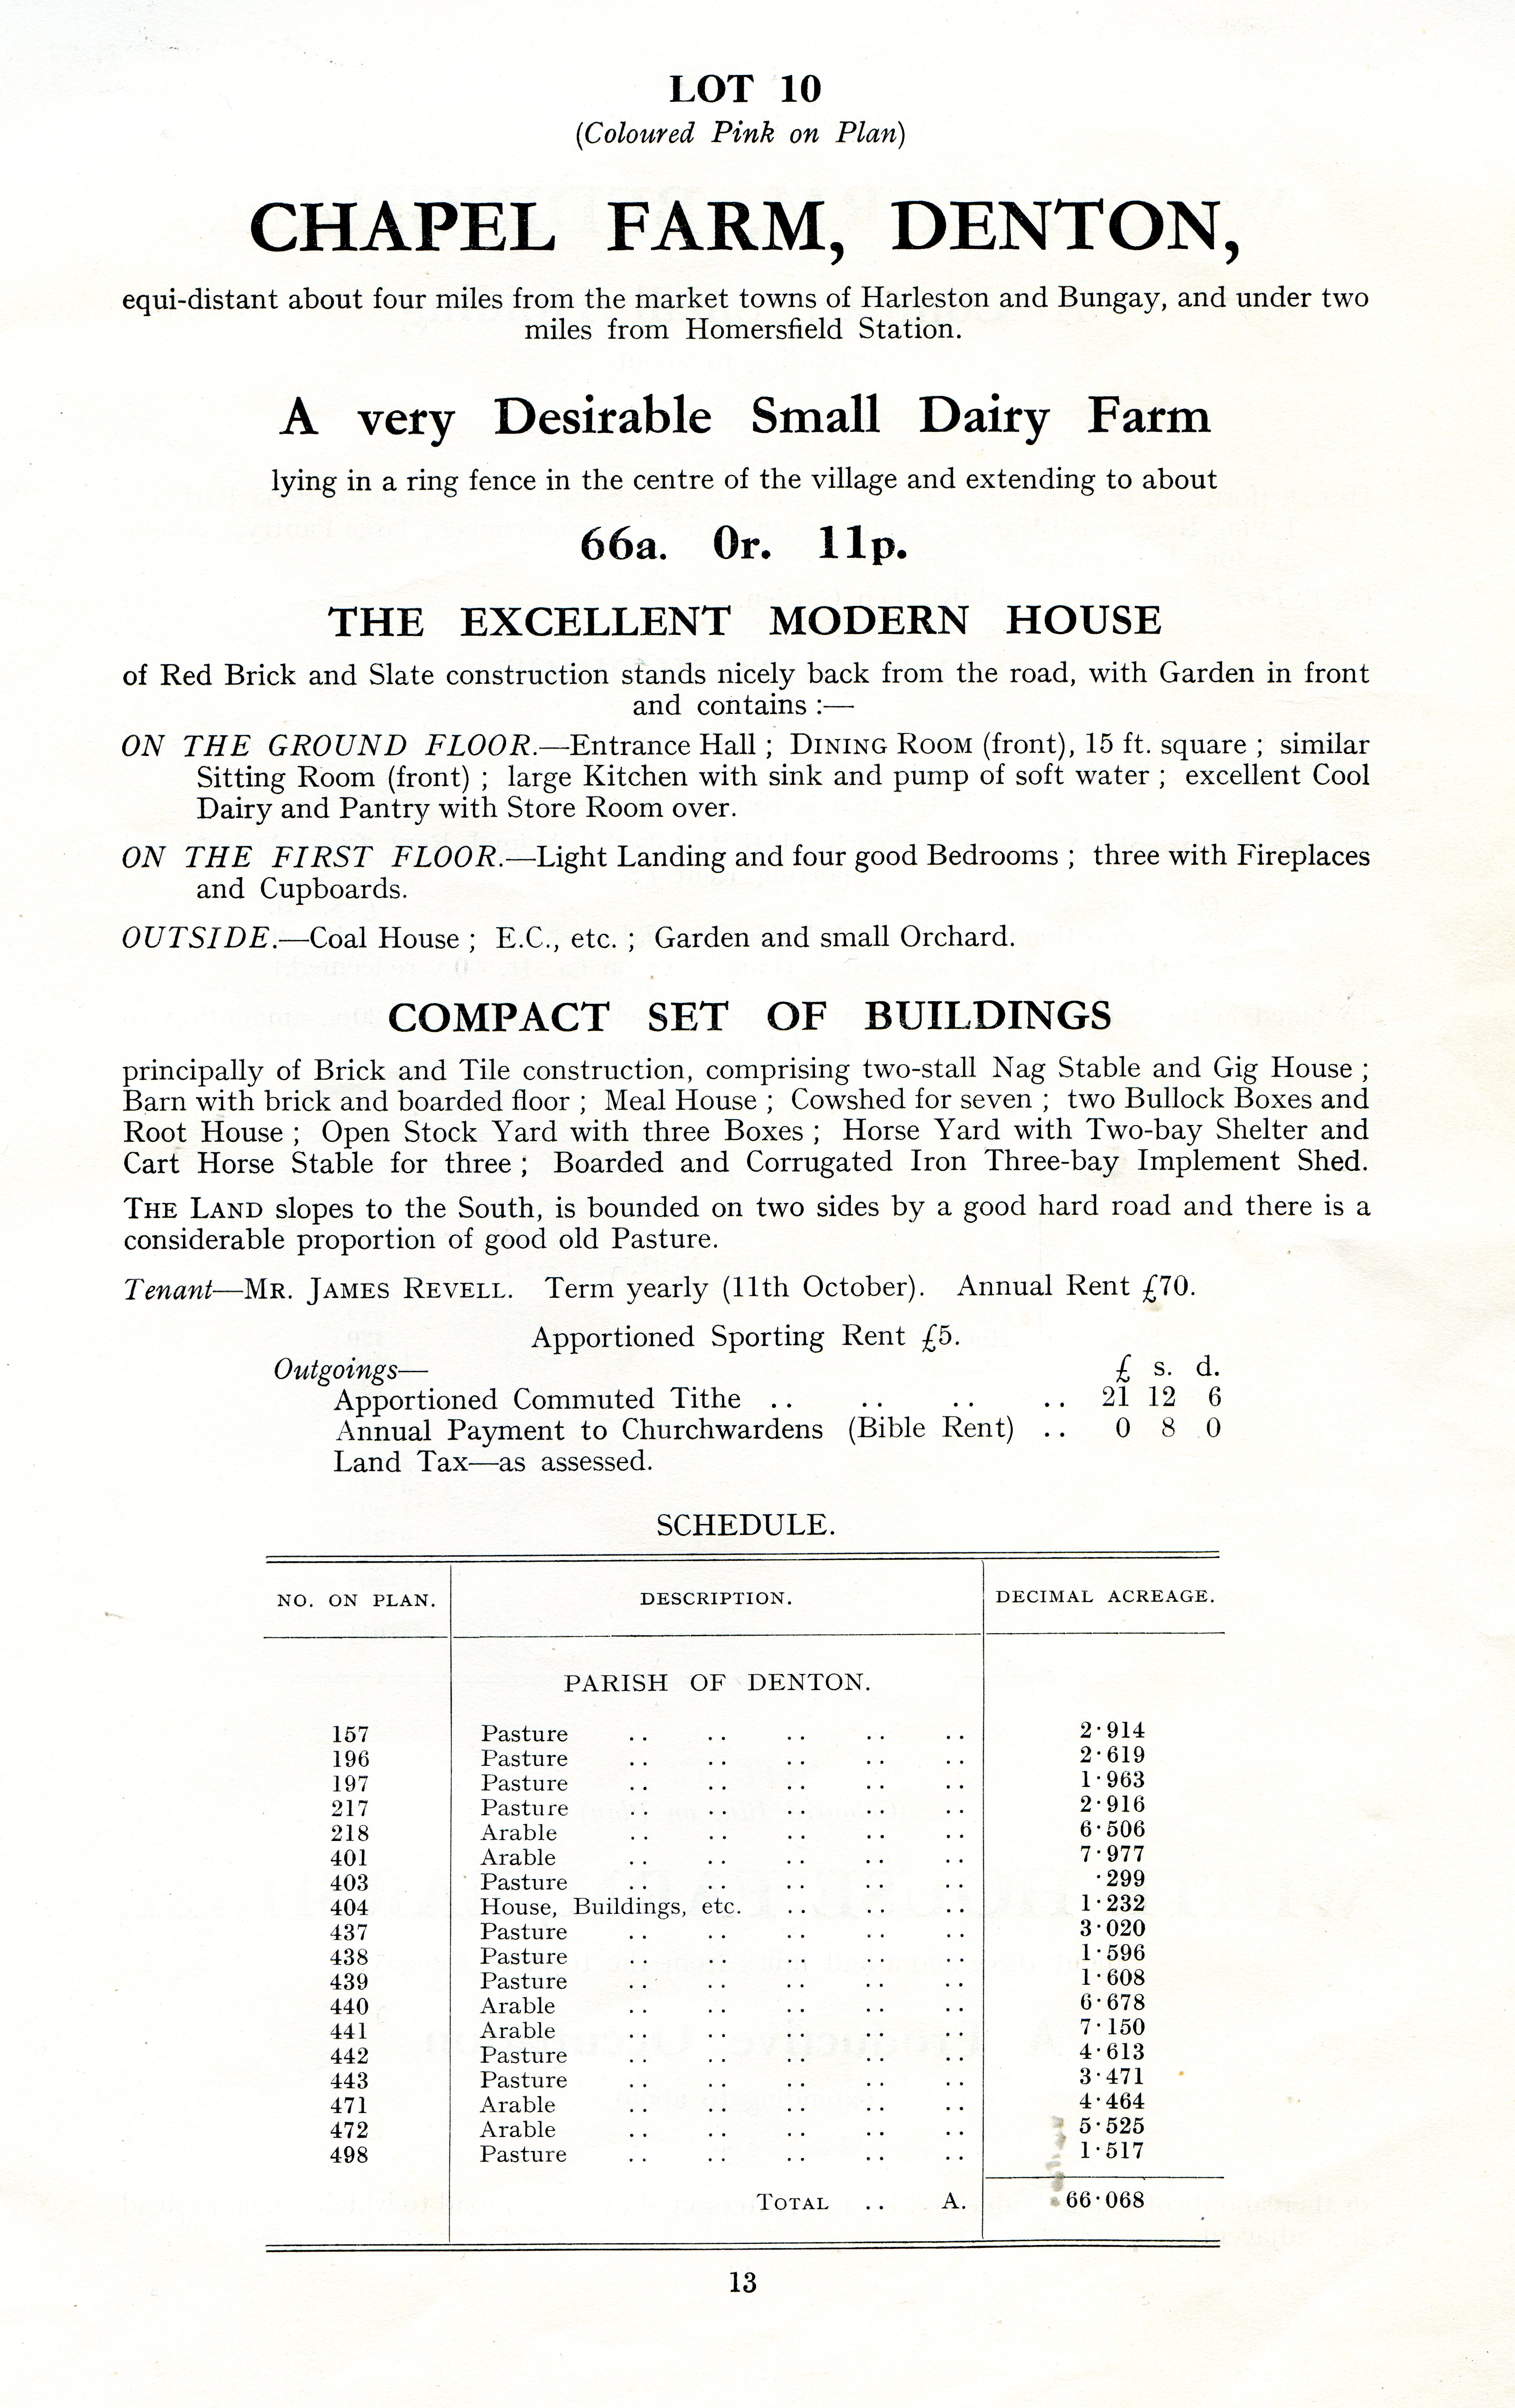 Chapel Farm sale details 1928